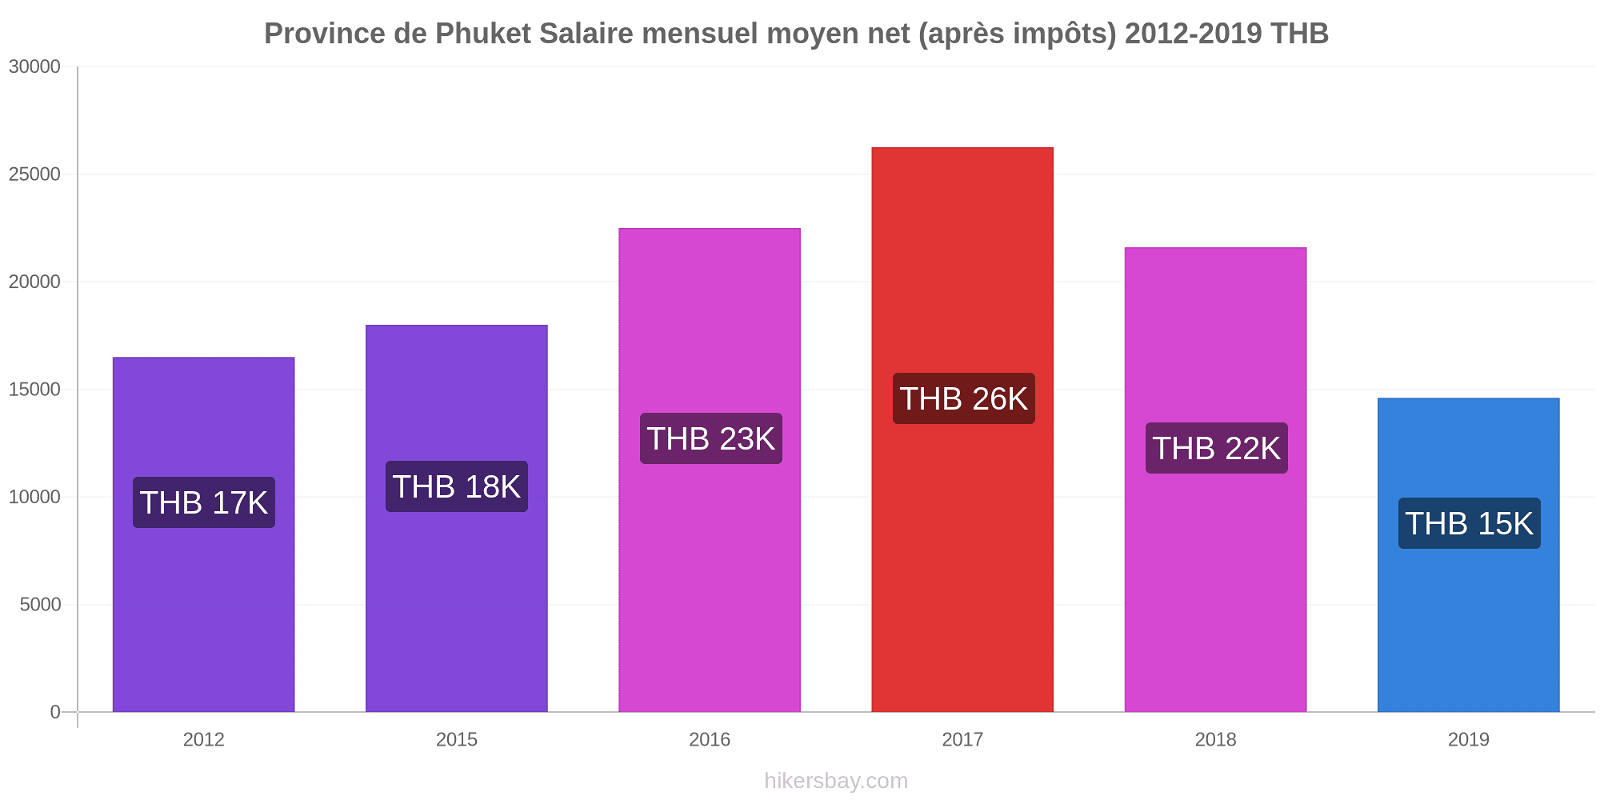 Province de Phuket changements de prix Salaire mensuel Net (après impôts) hikersbay.com